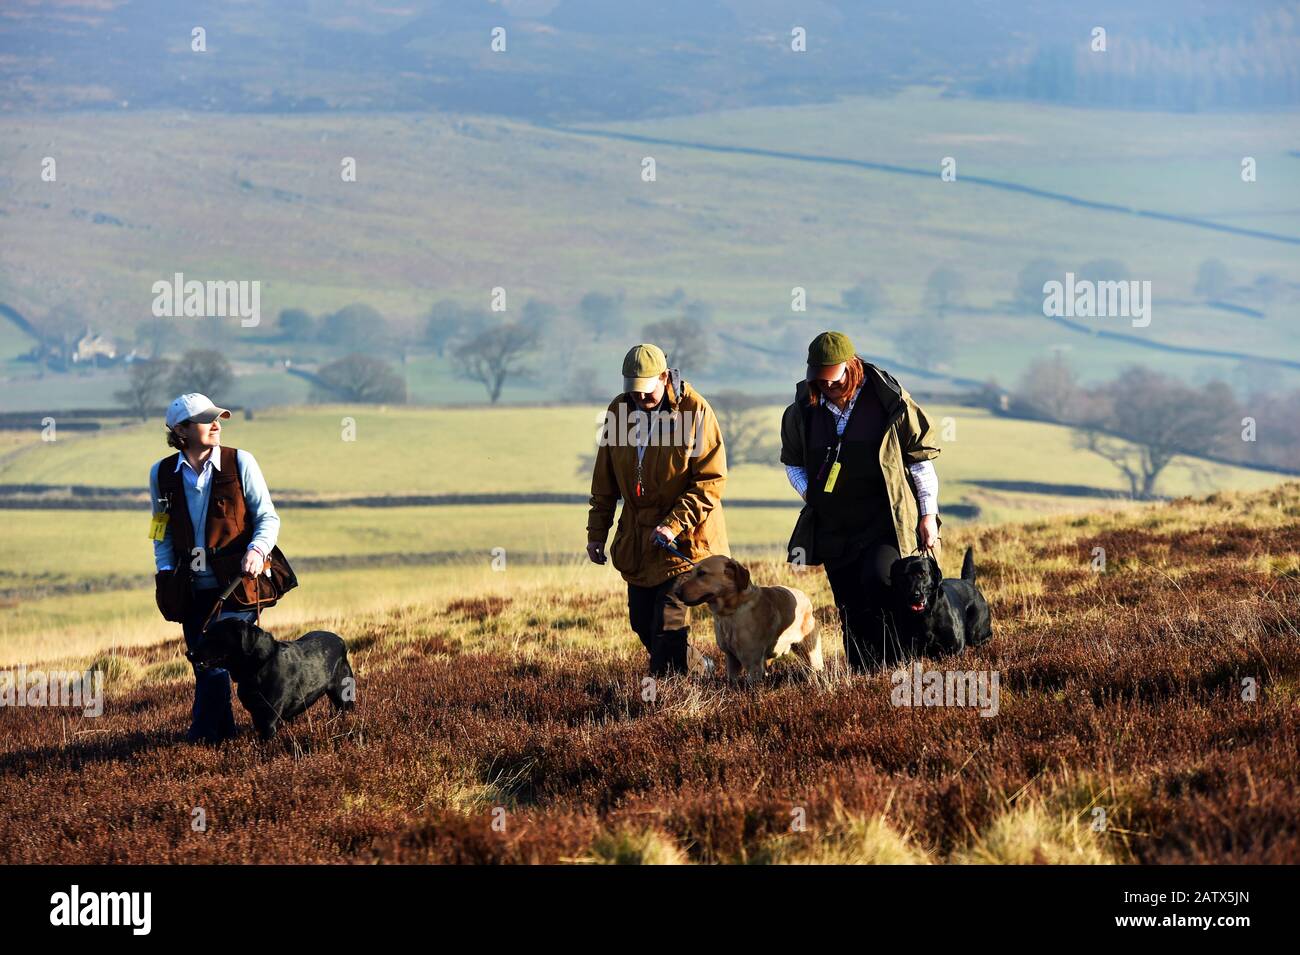 Waffenhunde Trainingseinheit Barden moor Yorkshire Dales UK drei Frauen gehen mit ihren Hunden durch das Moor Stockfoto